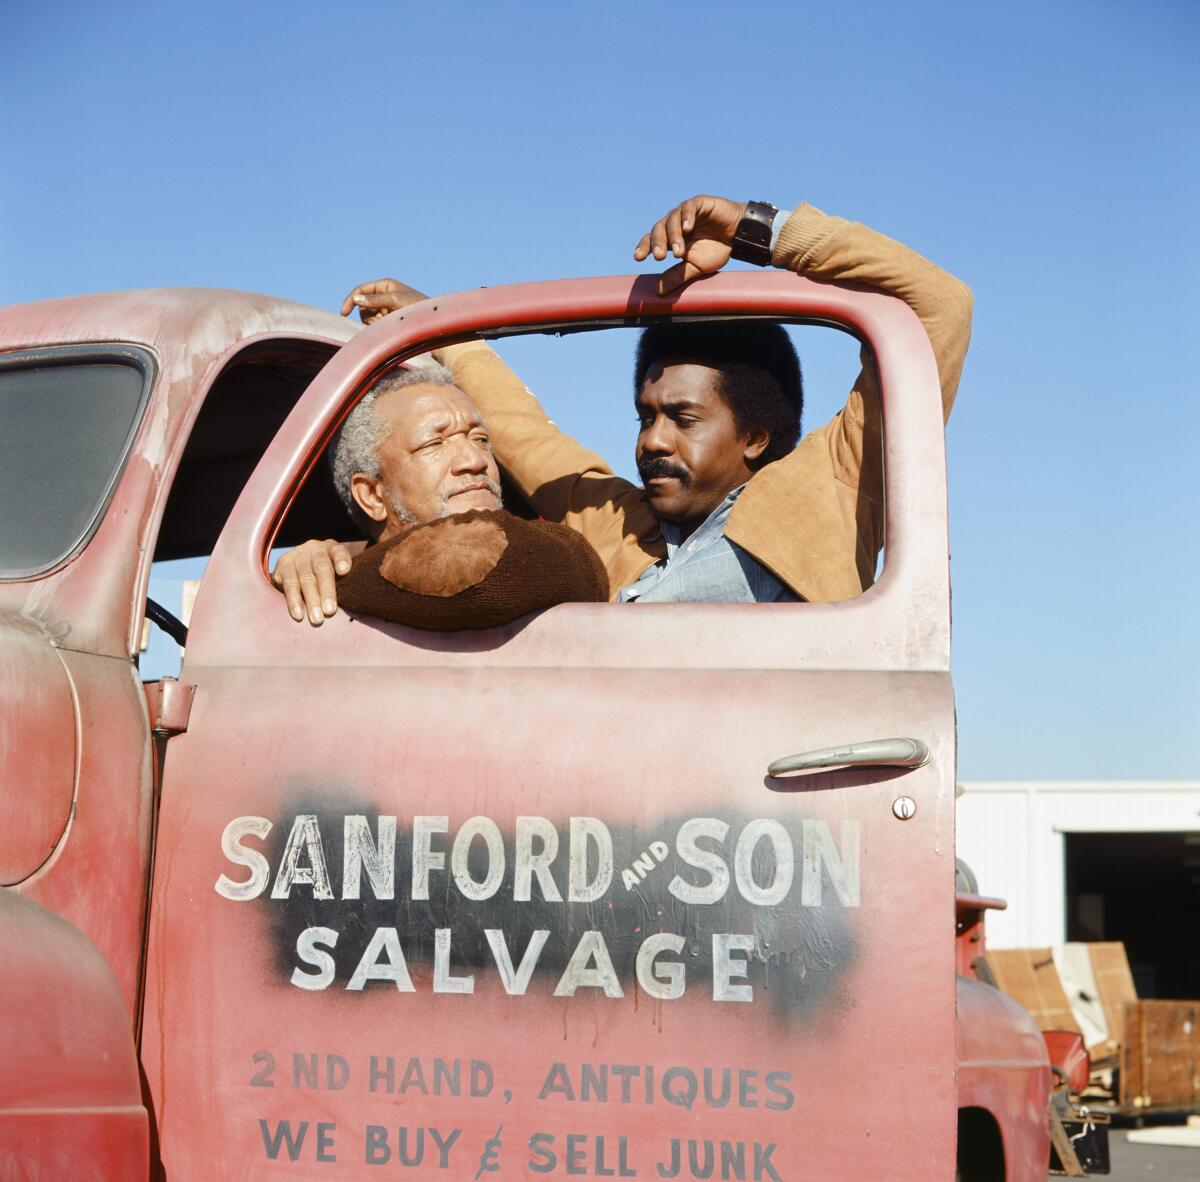 Redd Foxx, left, and Demond Wilson in "Sanford and Son."